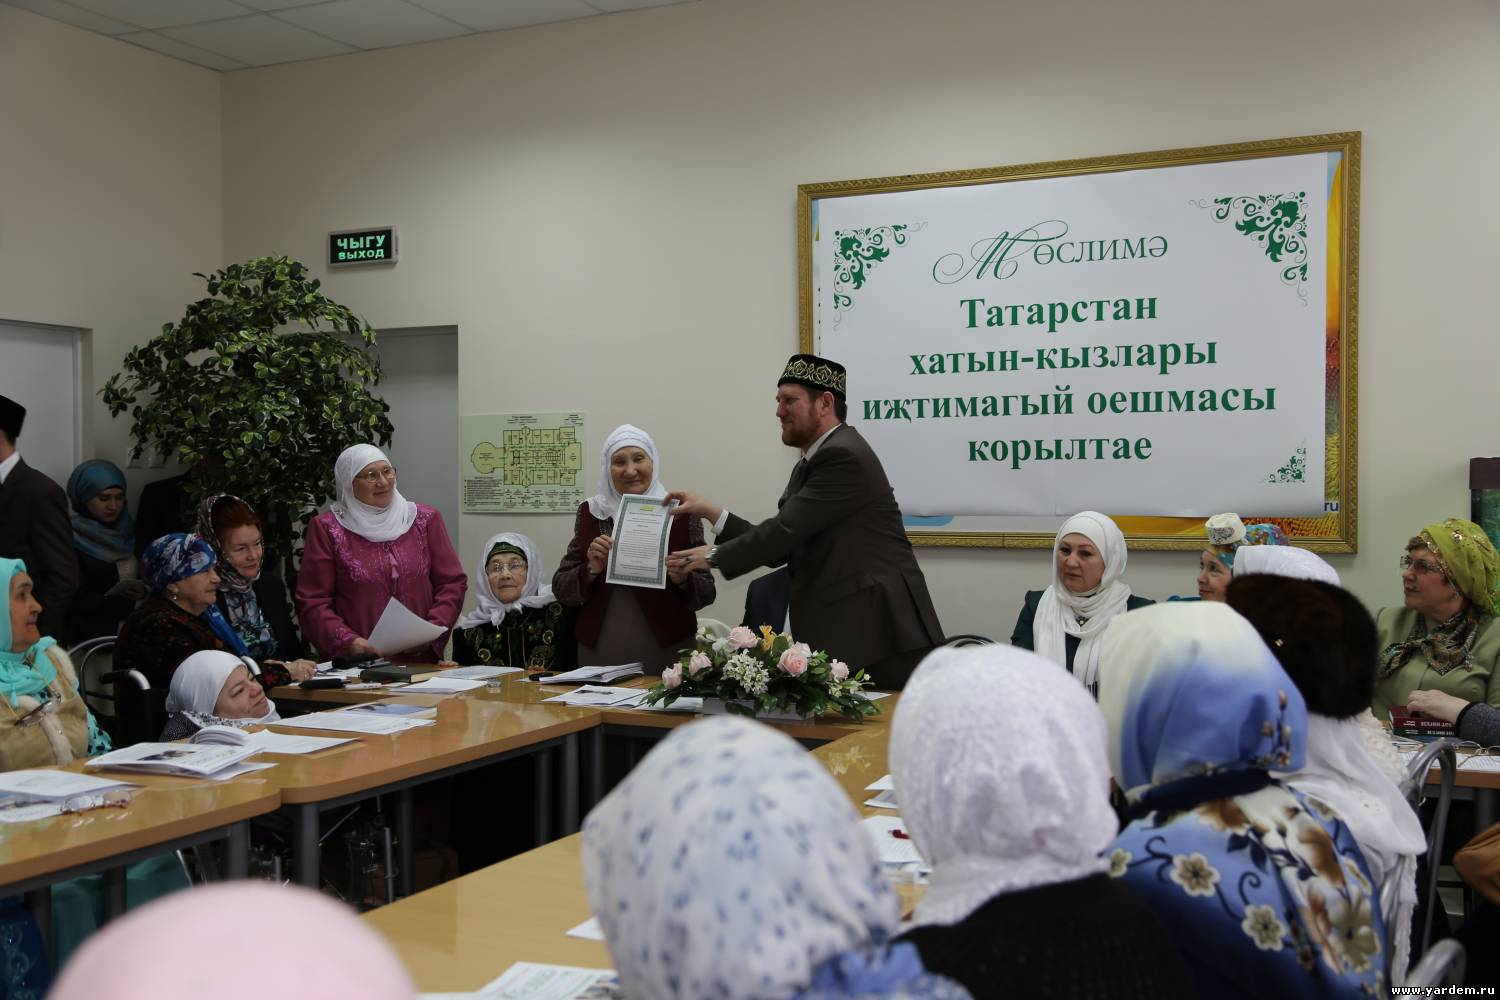 В Казани создана Всероссийская общественная организация мусульманских женщин «Муслима»